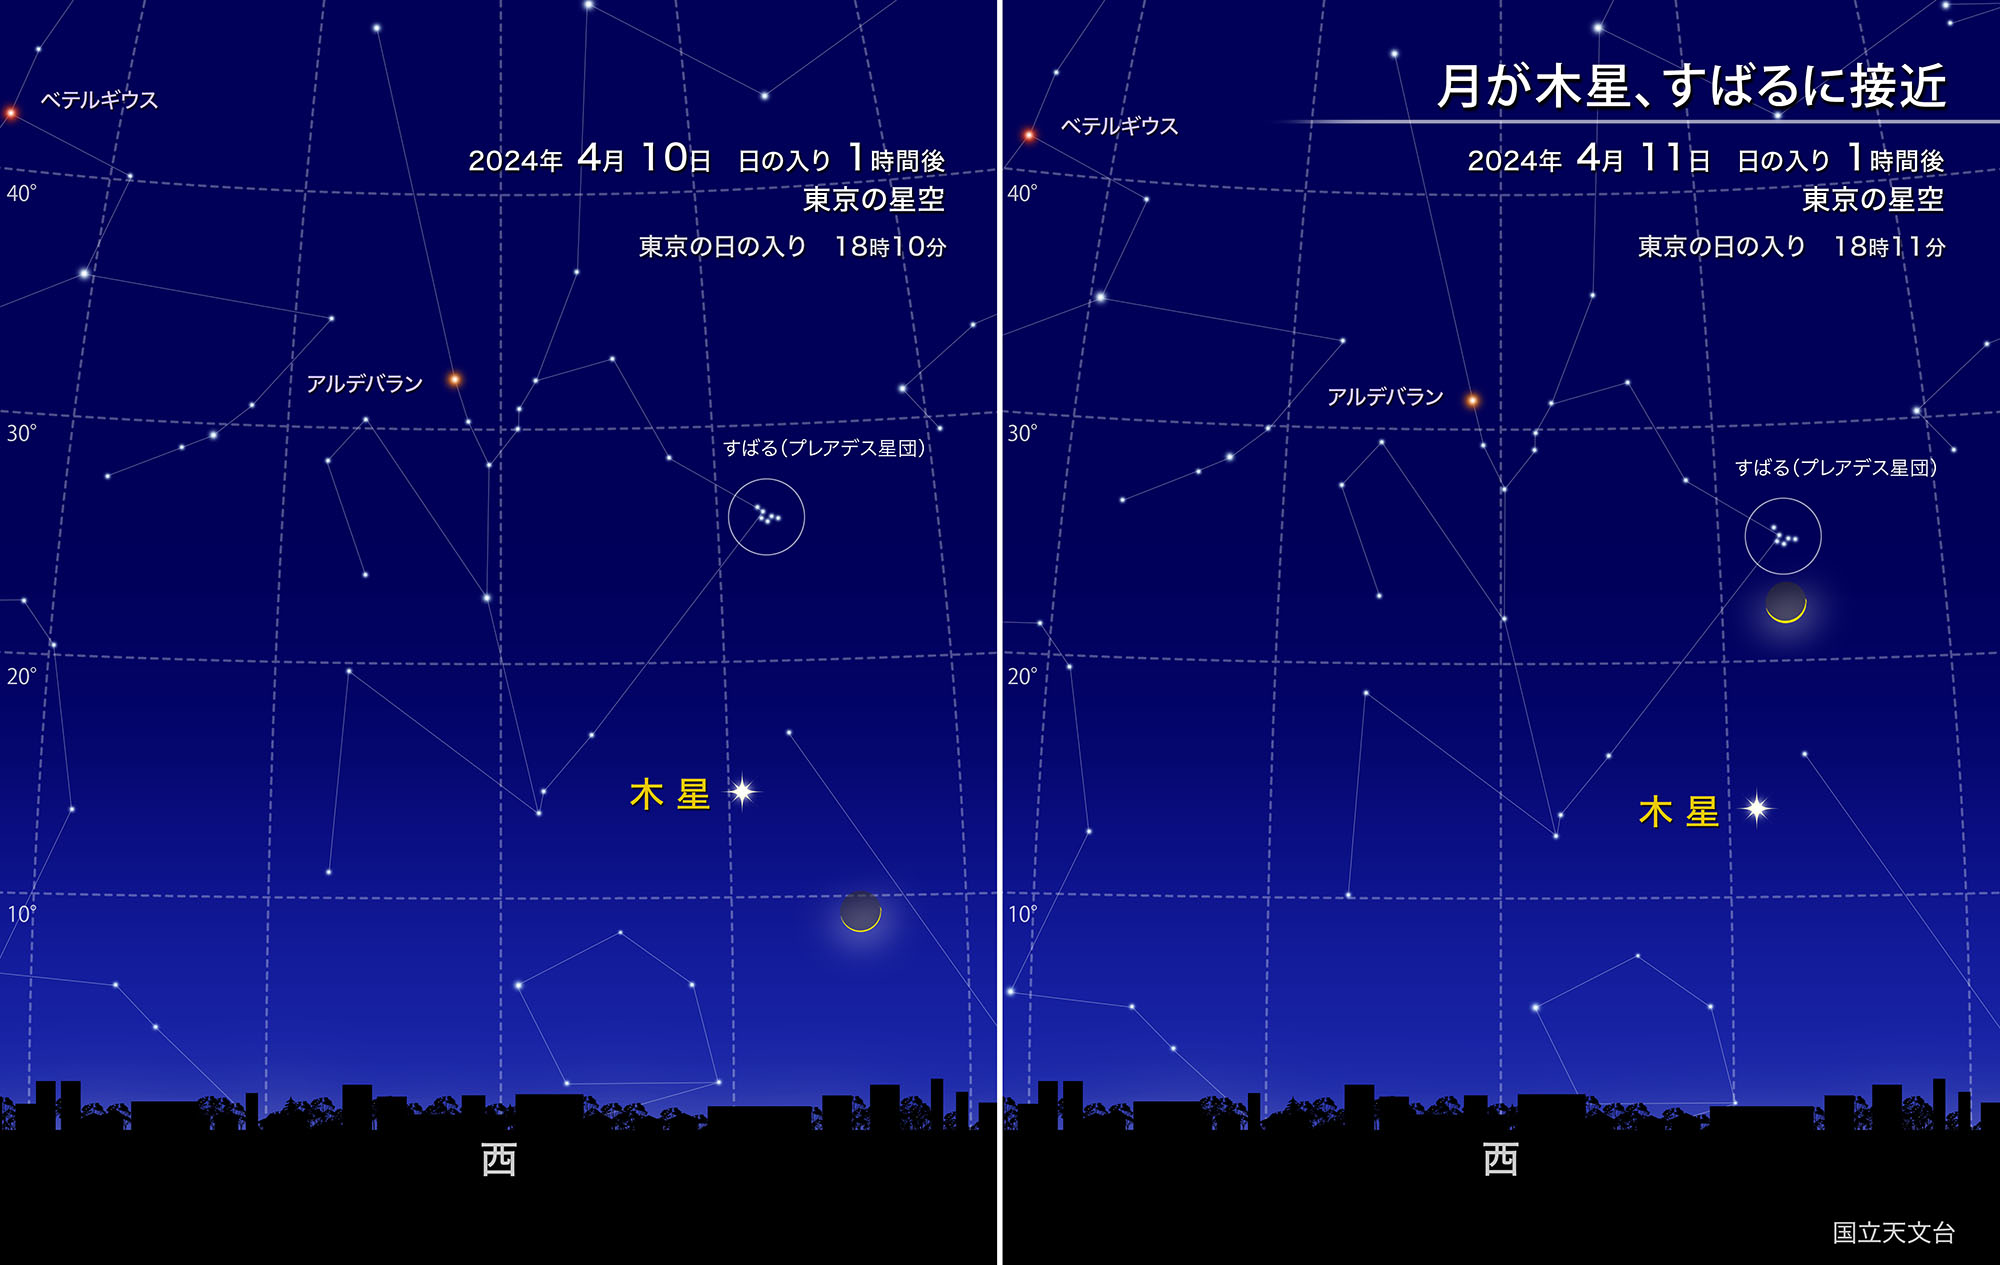 月が木星、すばるに接近
2024年 4月11日日の入り 1時間後_東京の星空 東京の日の入り18時11分